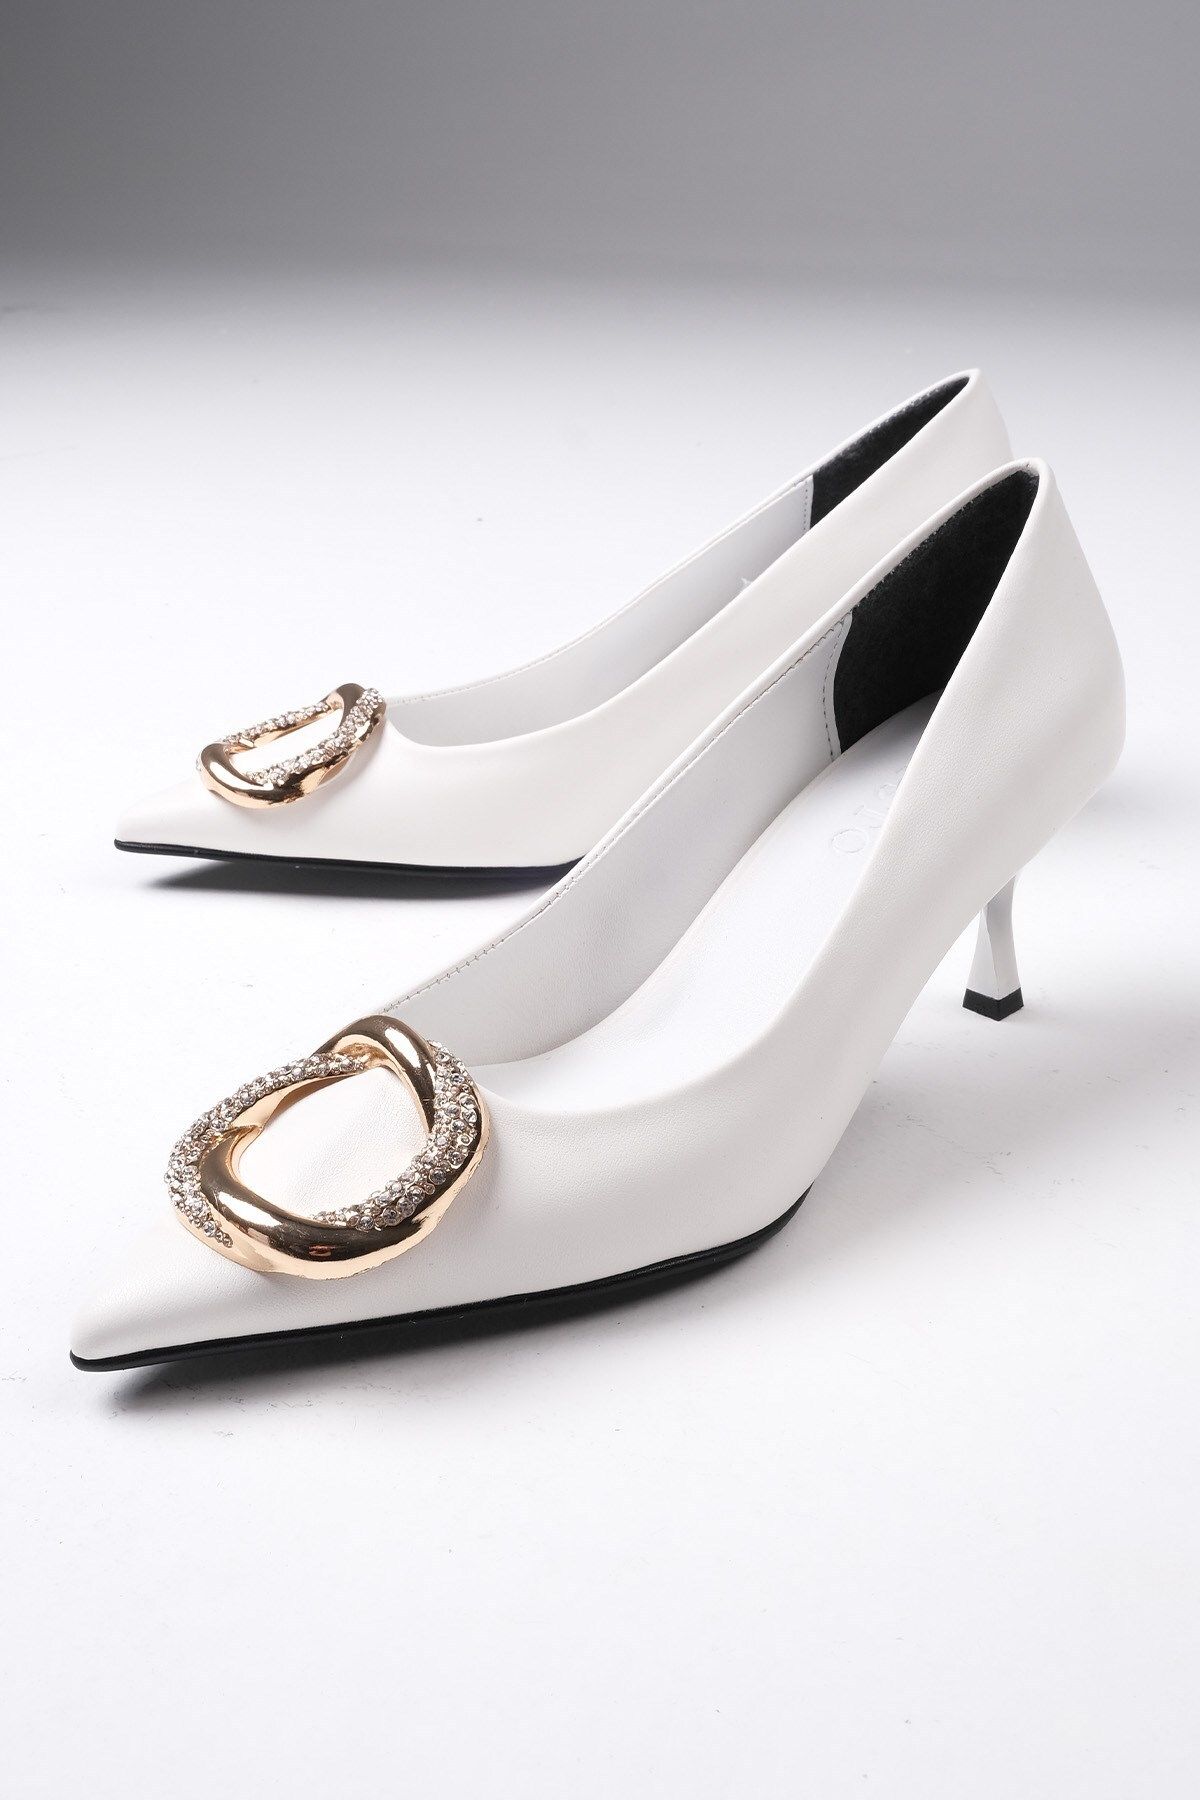 Mio Gusto Caterina Beyaz Renk Taşlı Metal Tokalı Kadın Stiletto Topuklu Ayakkabı